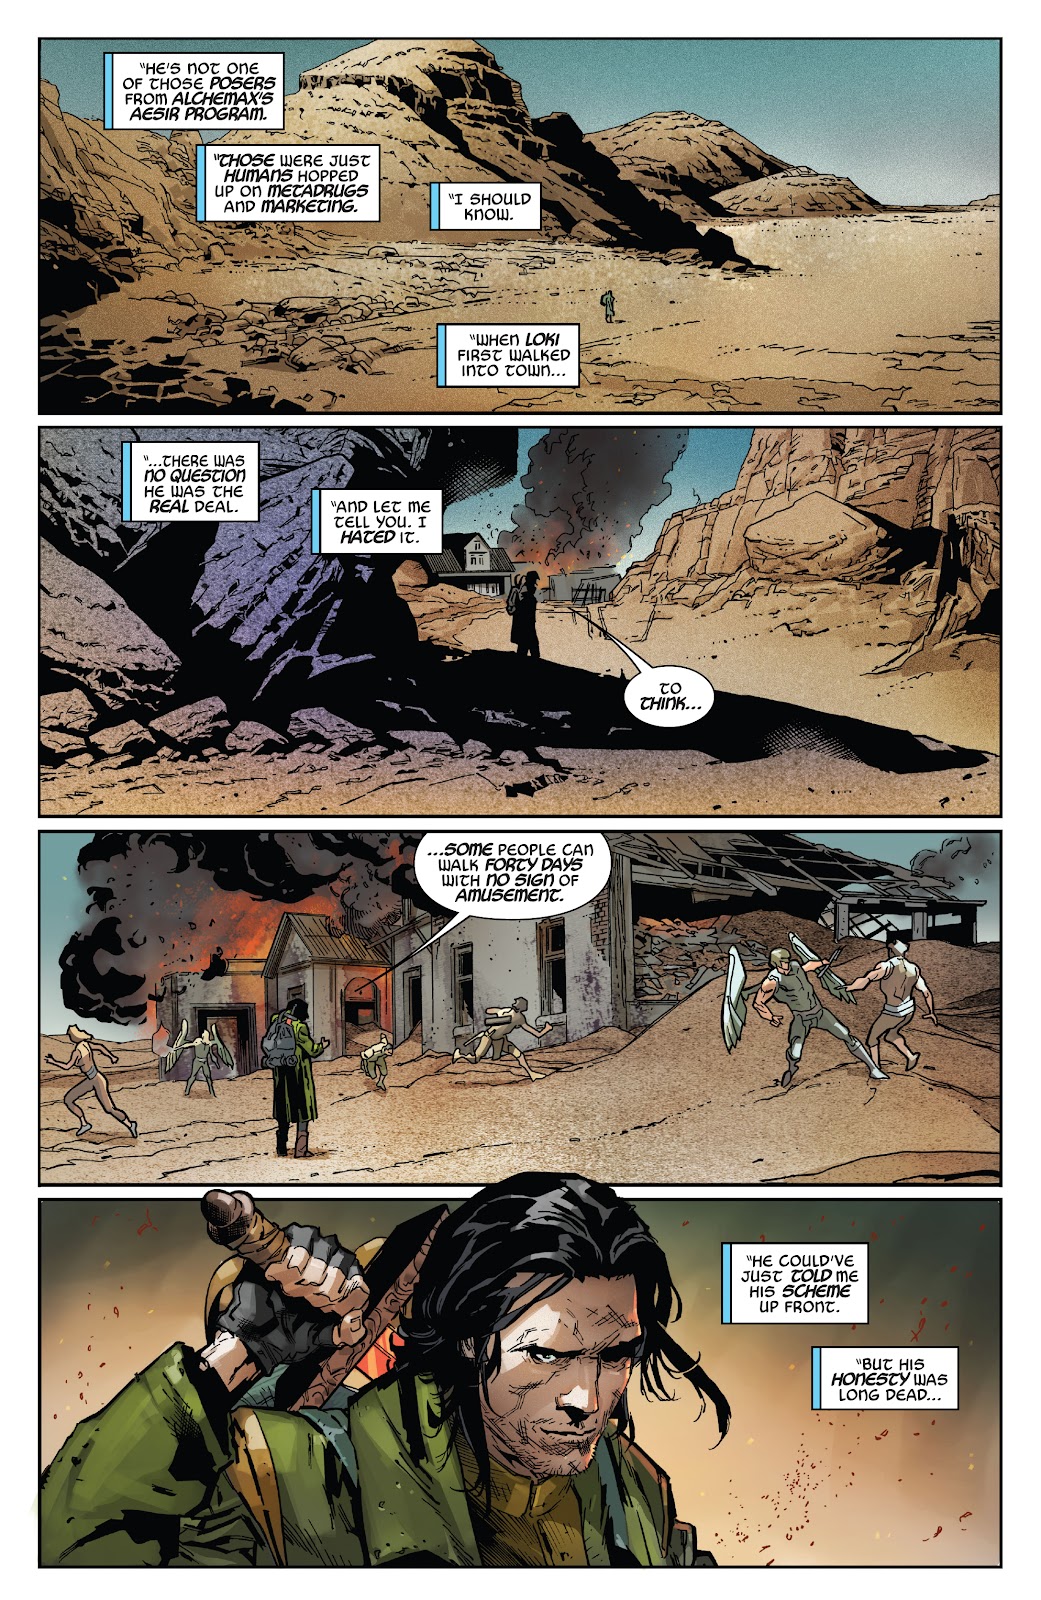 Spider-Man 2099: Exodus Alpha issue 2 - Page 4